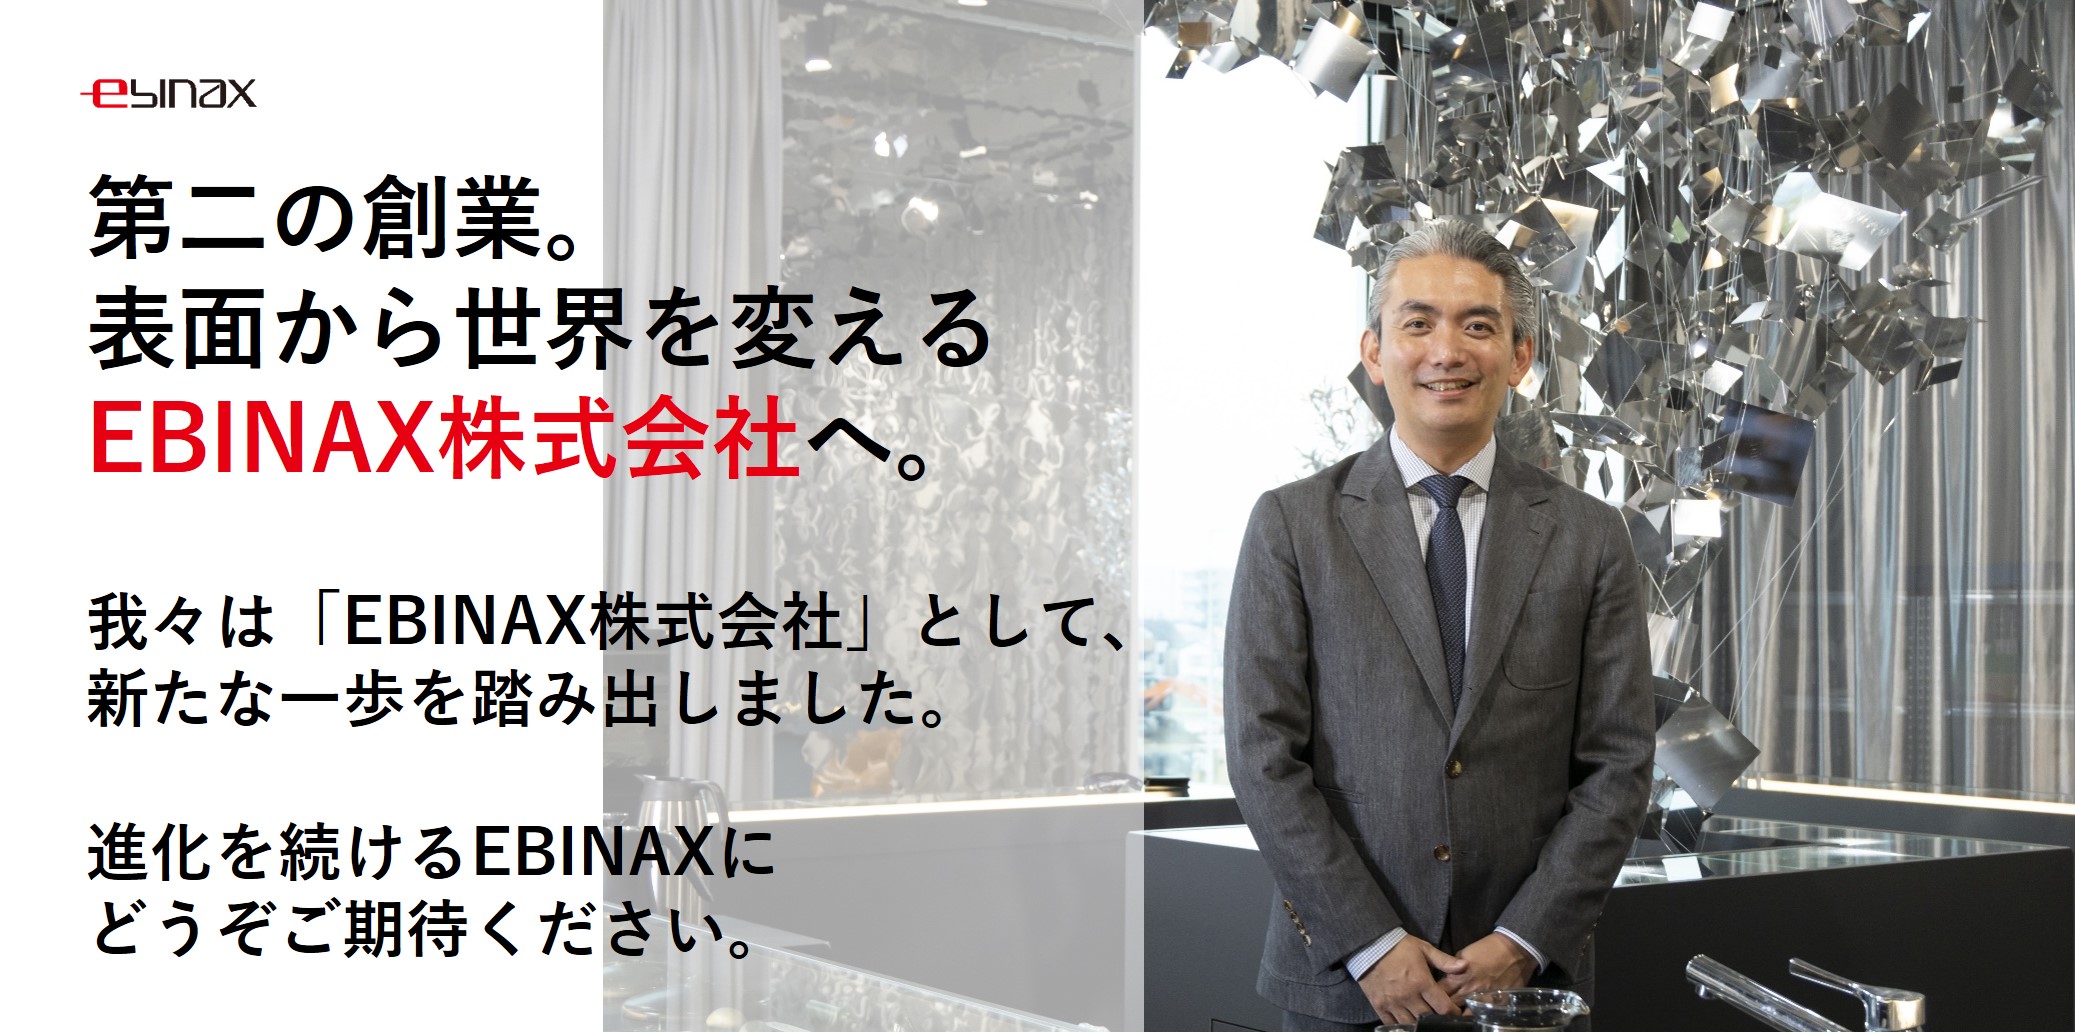 「EBINAX株式会社」へ社名変更のお知らせ